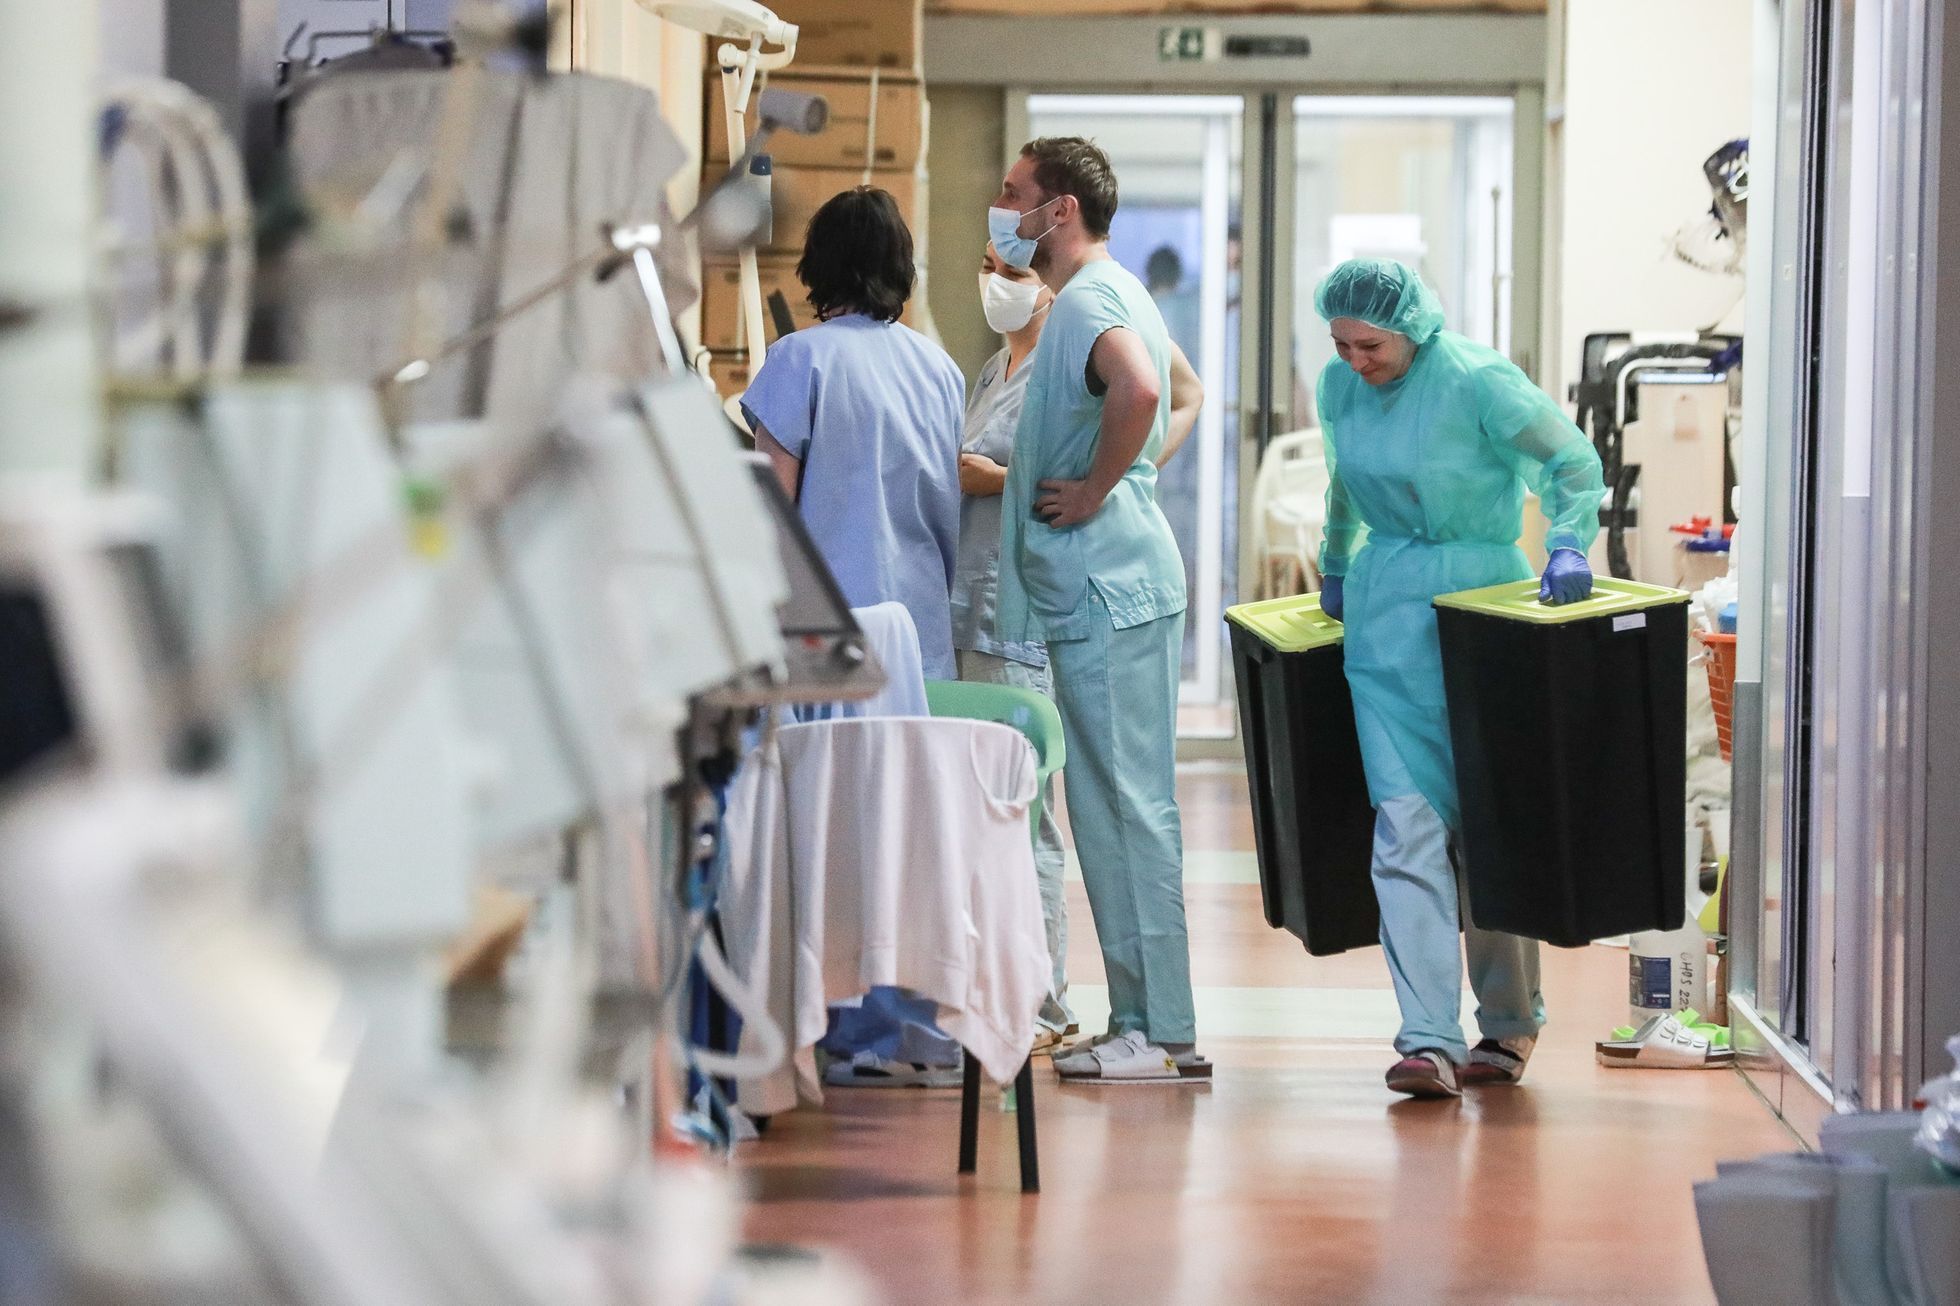 Chirurgický JIP Nemocnice Liberec - Koronavirus, lékaři, sestry, doktoři, pacienti, covid-19